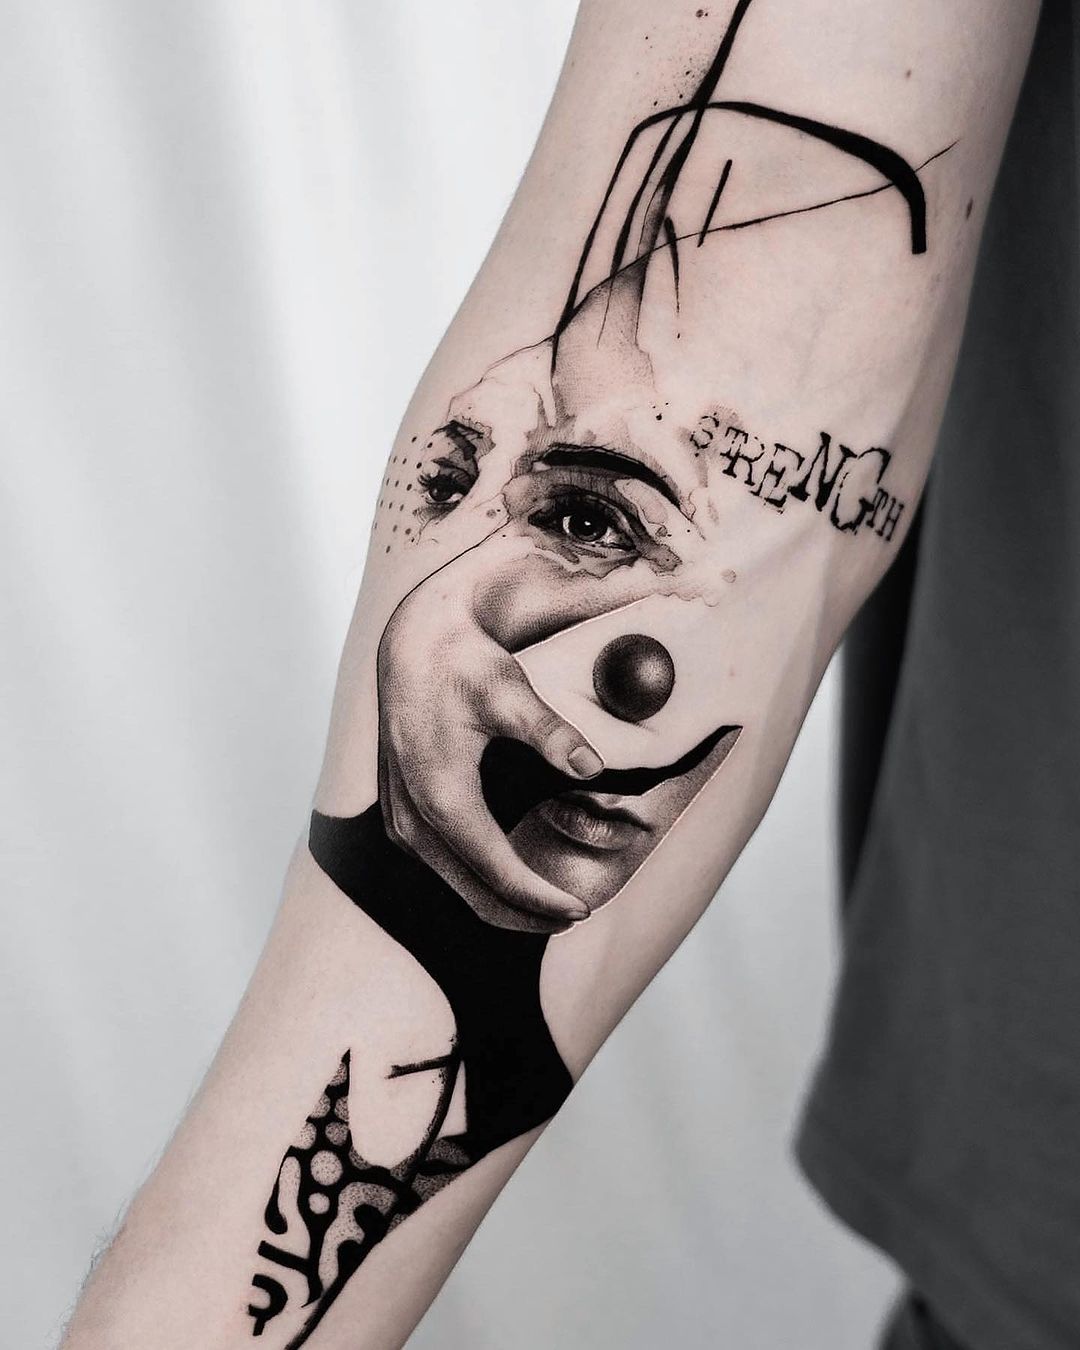 Portrait tattoo on arm by black.minimal.tattoo